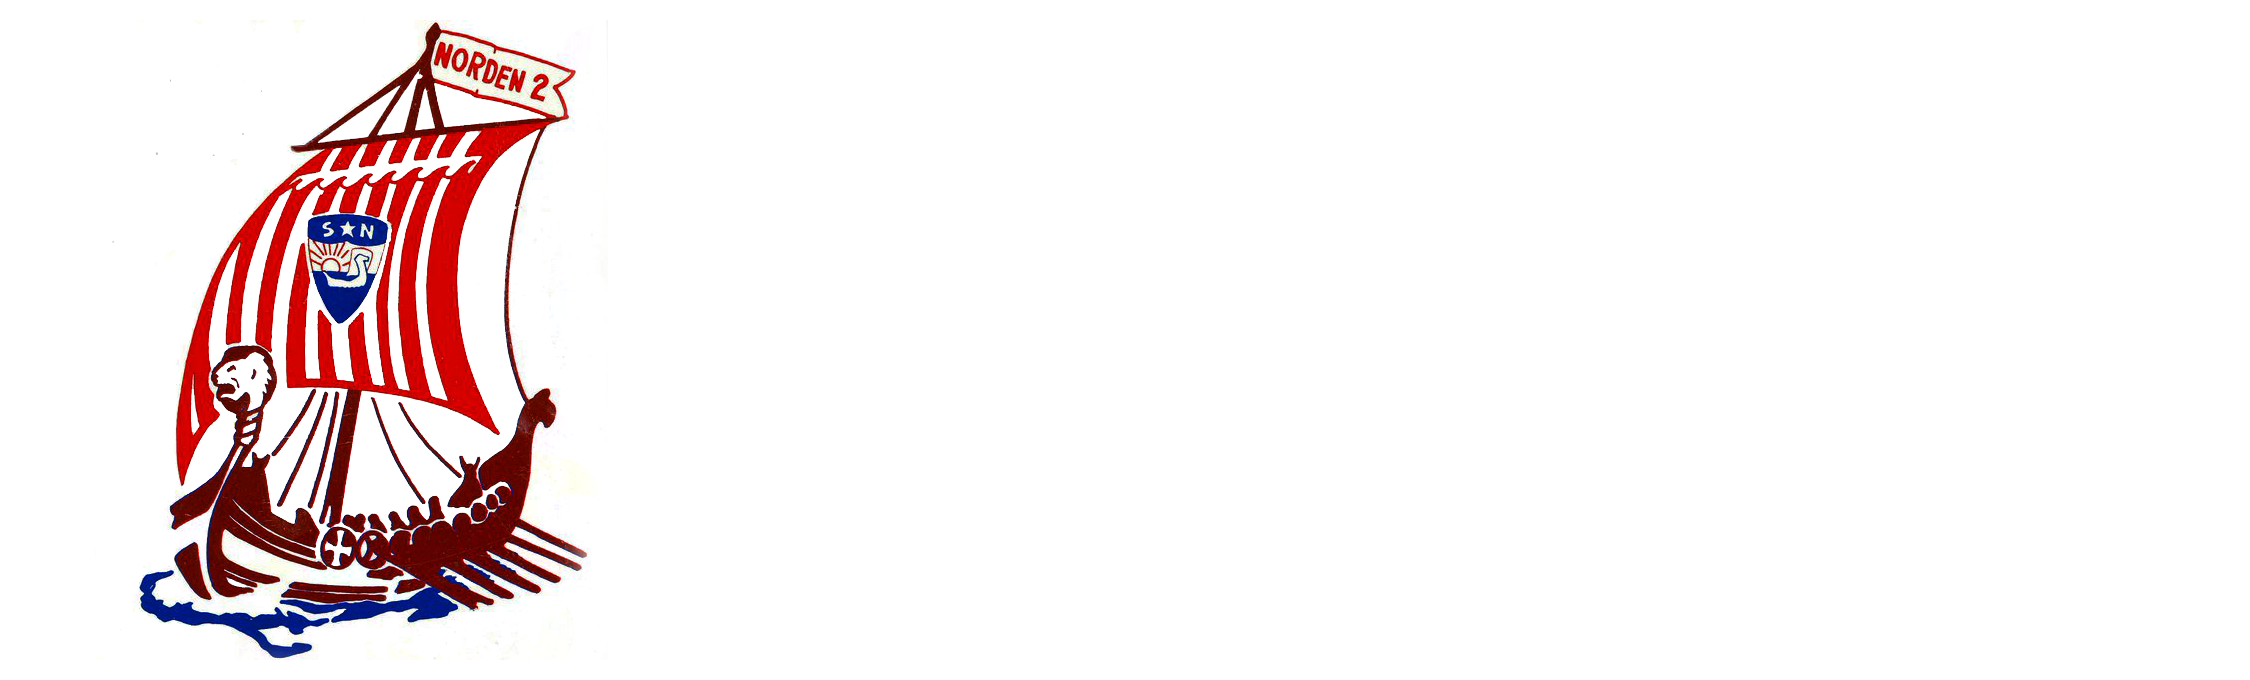 Norden Lodge #2